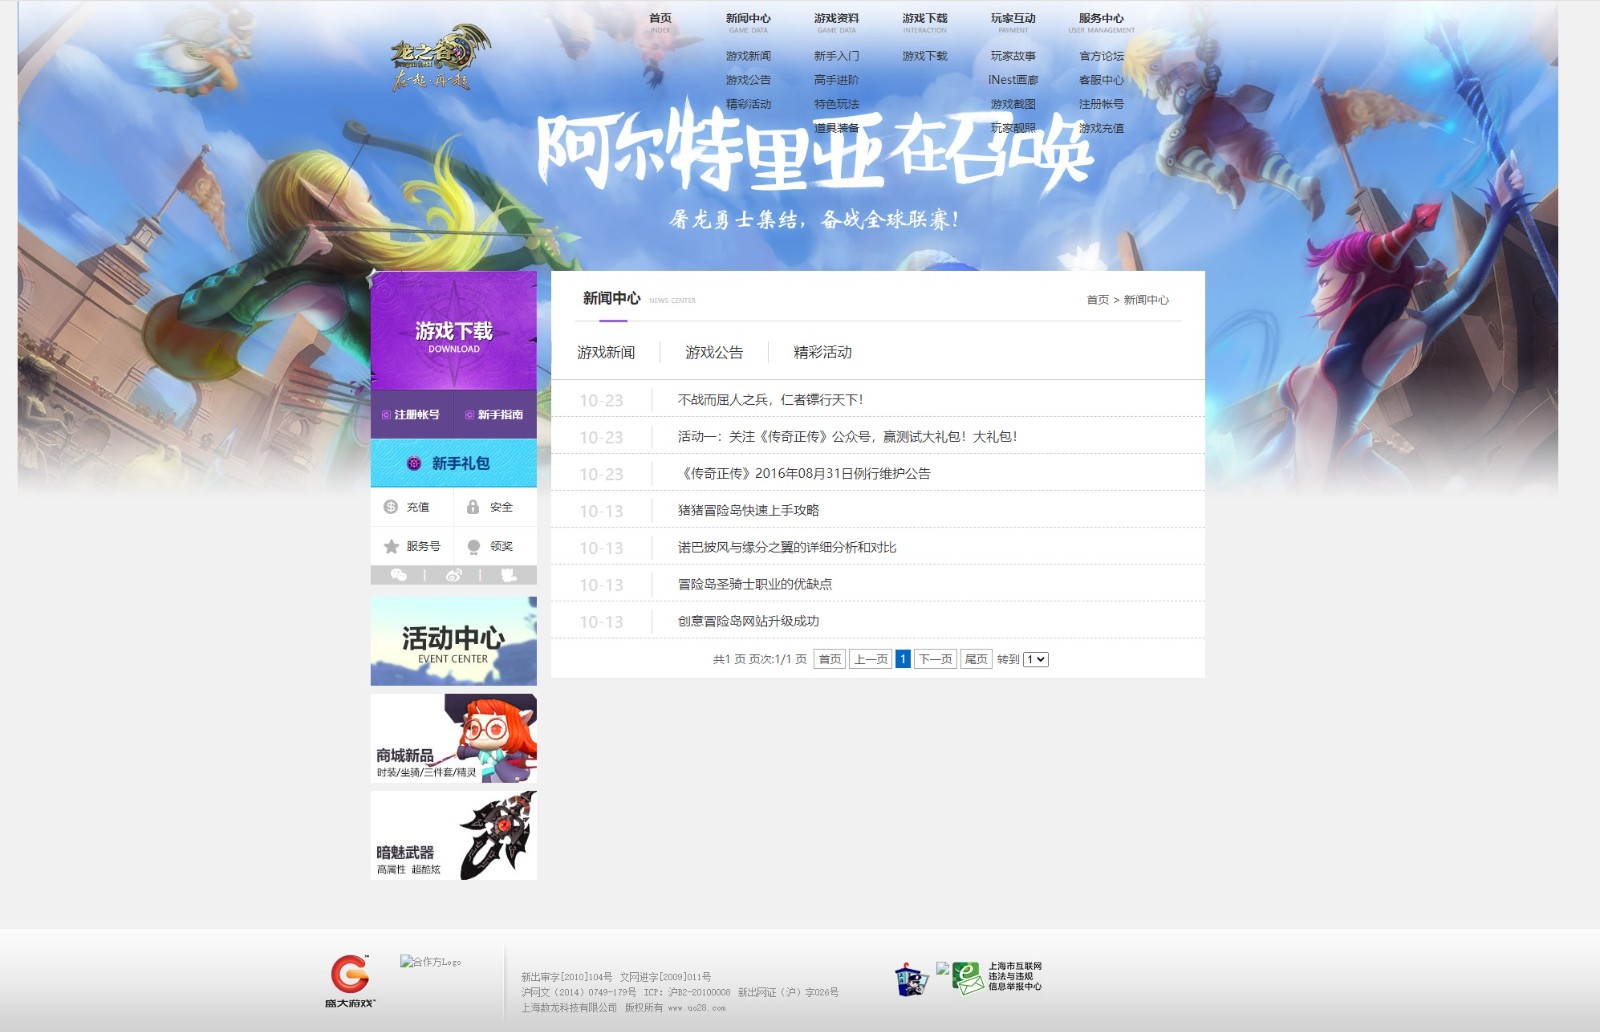 原龙之谷旧版官网网站高仿程度98%